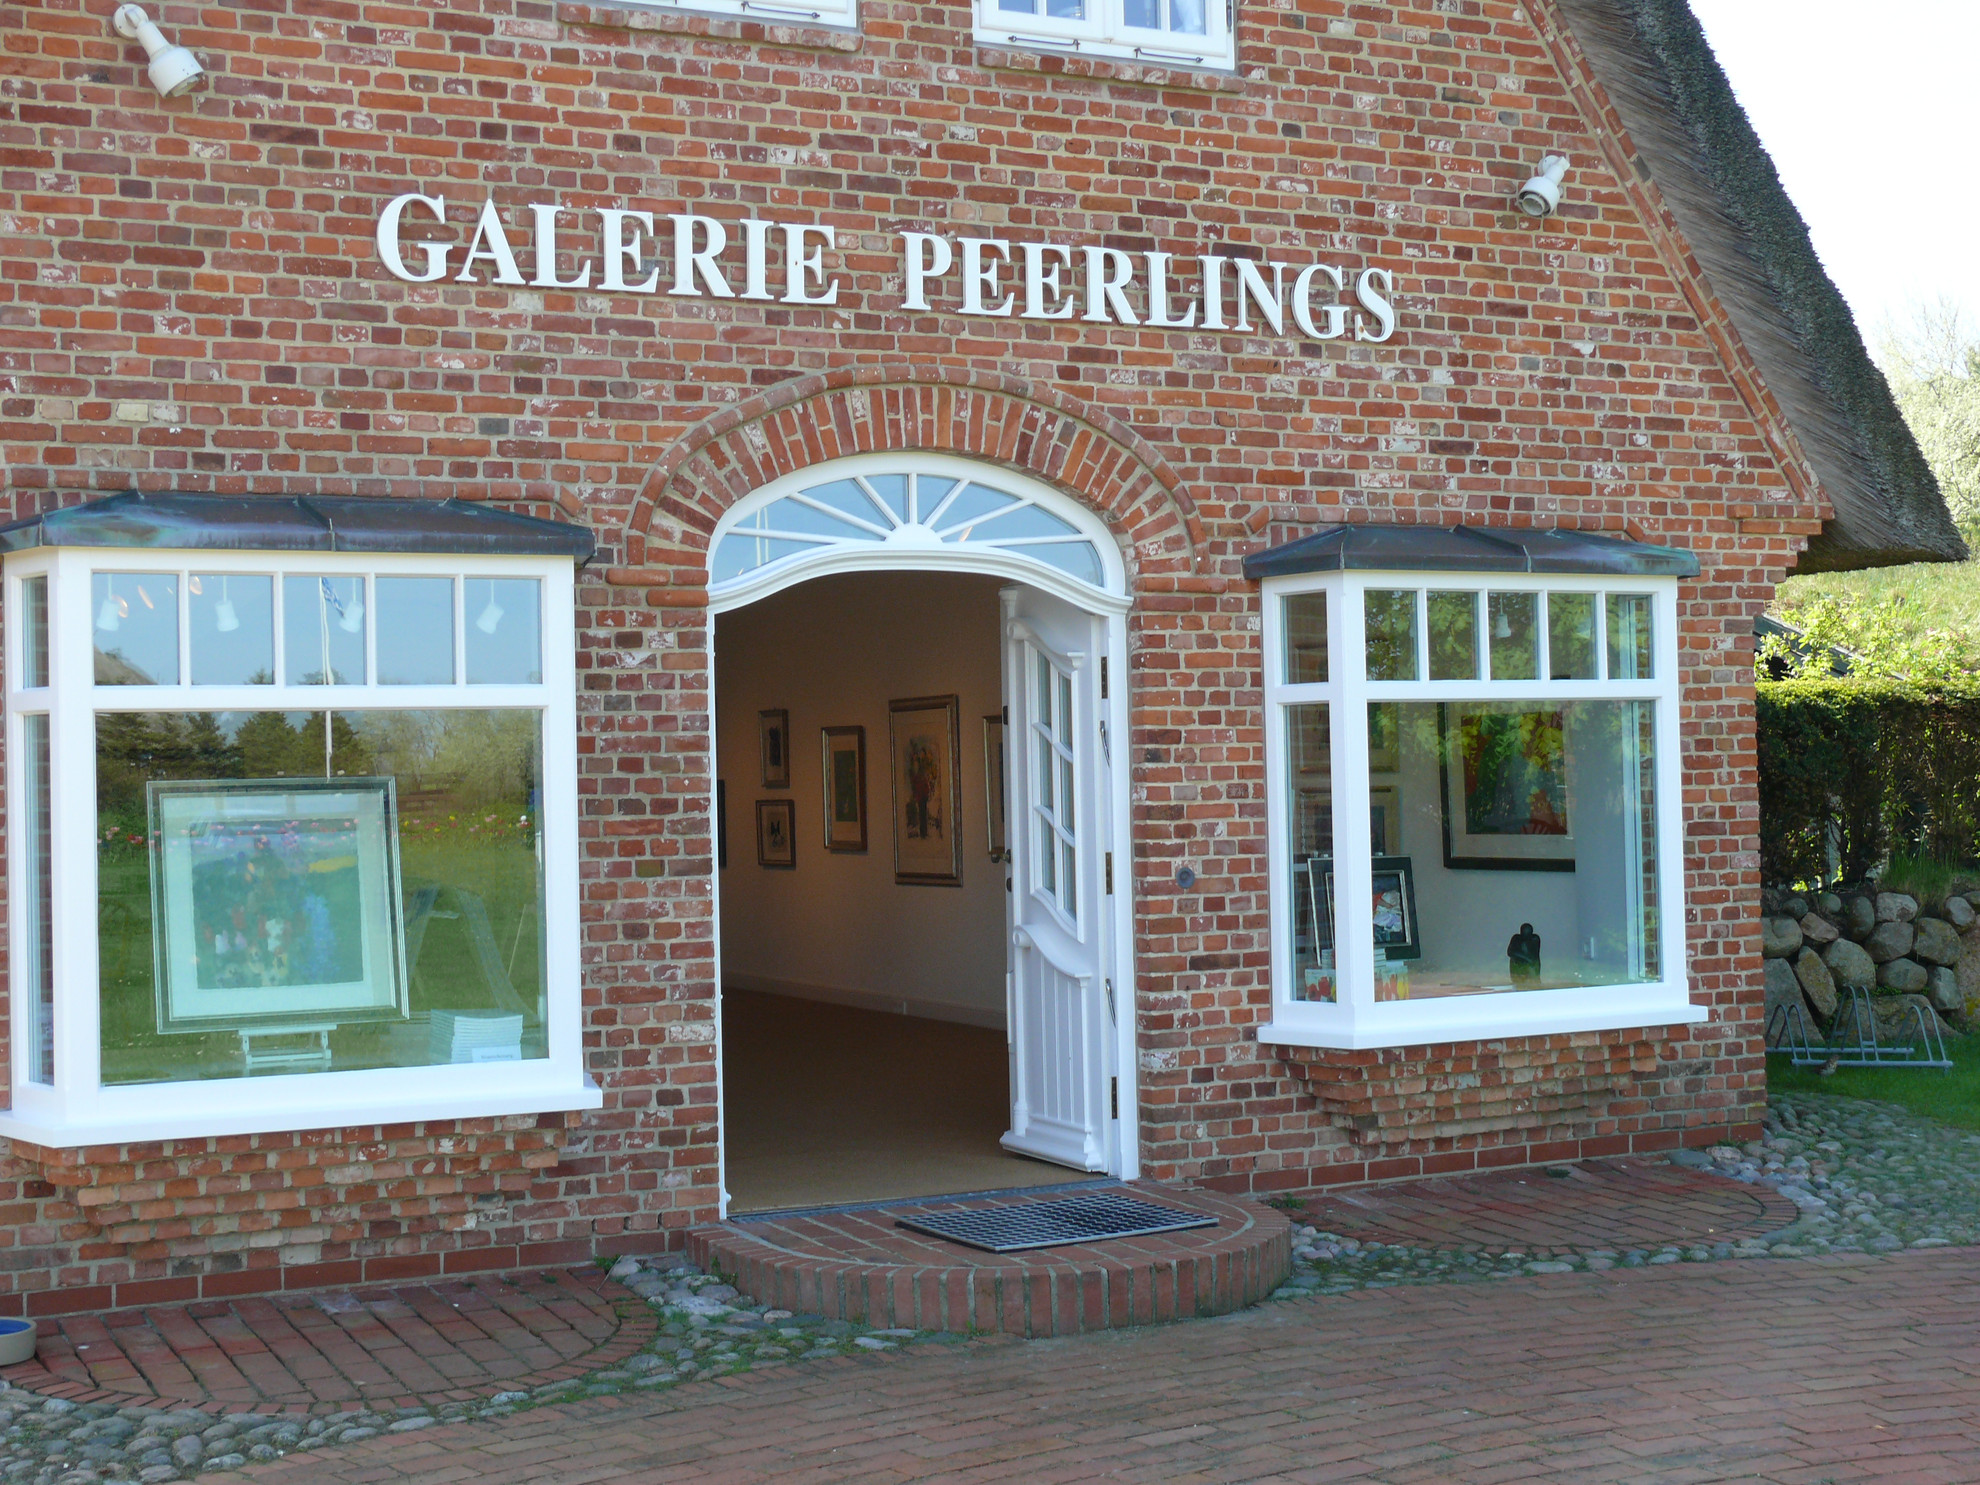 Galerie Peerlings